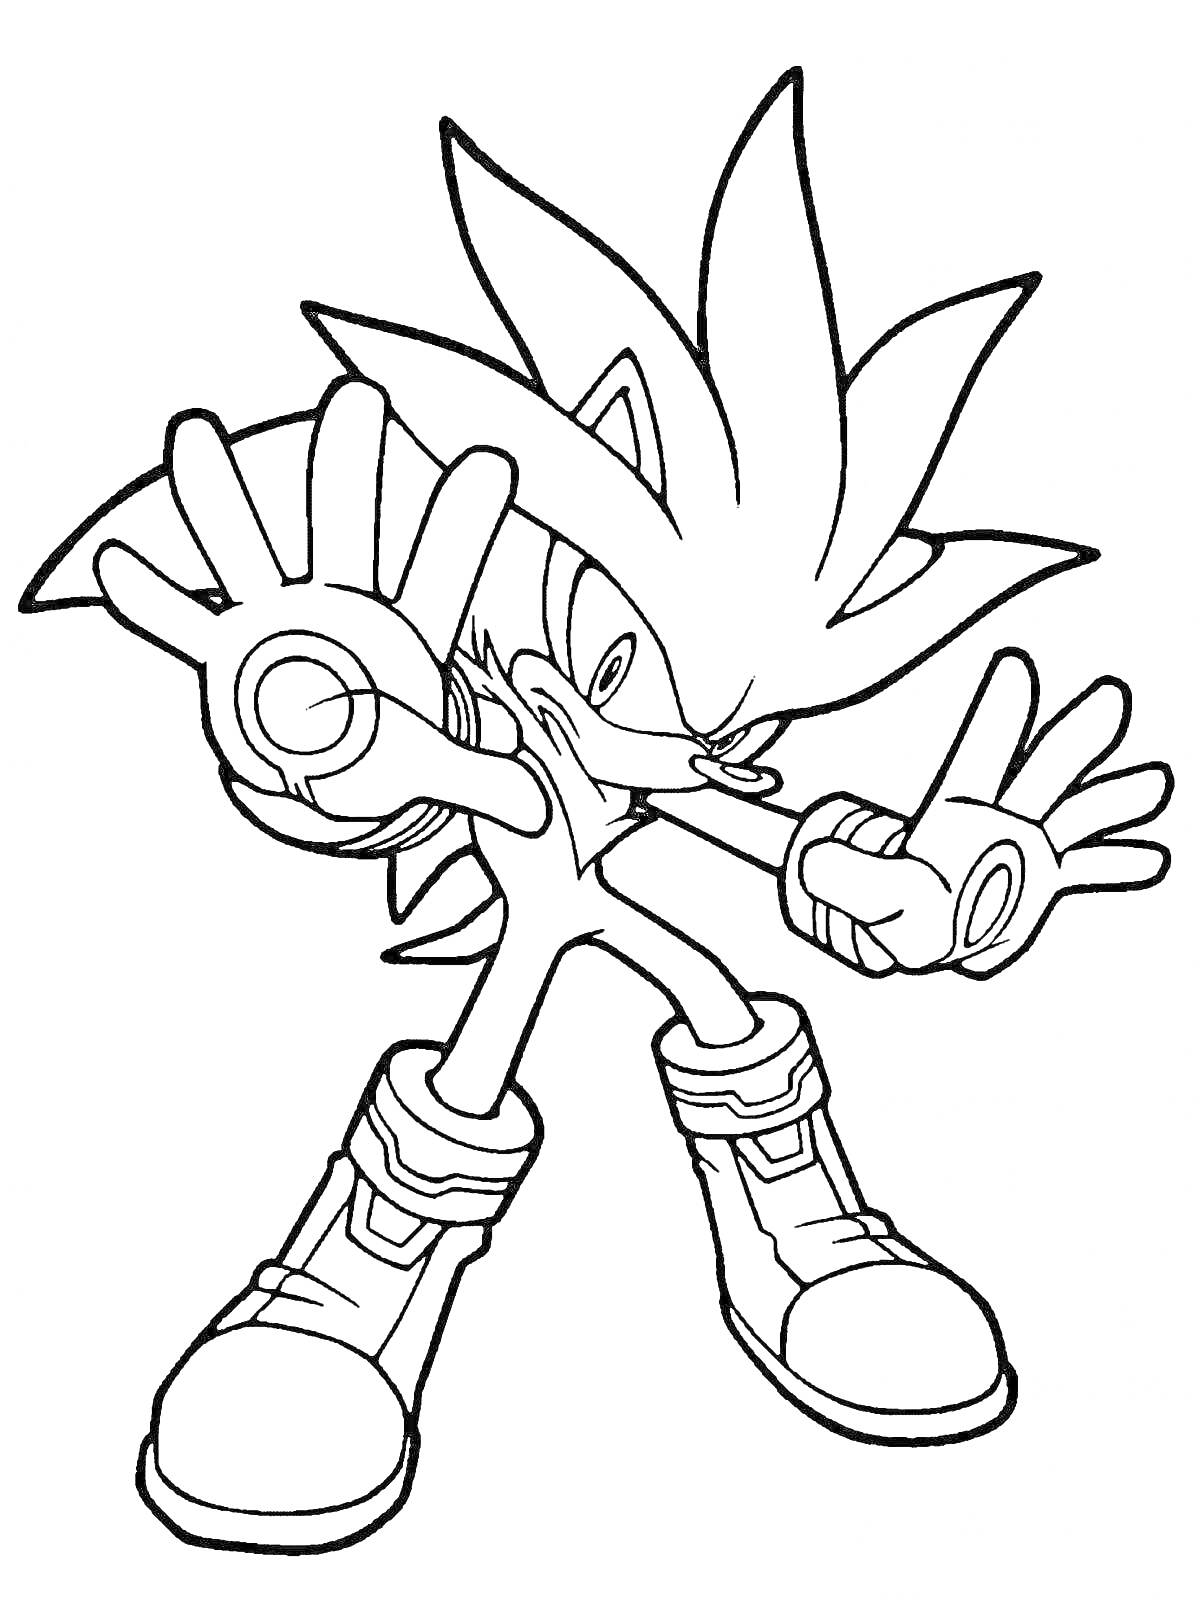 Раскраска Персонаж из мультфильма с поднятыми руками и большими ботинками